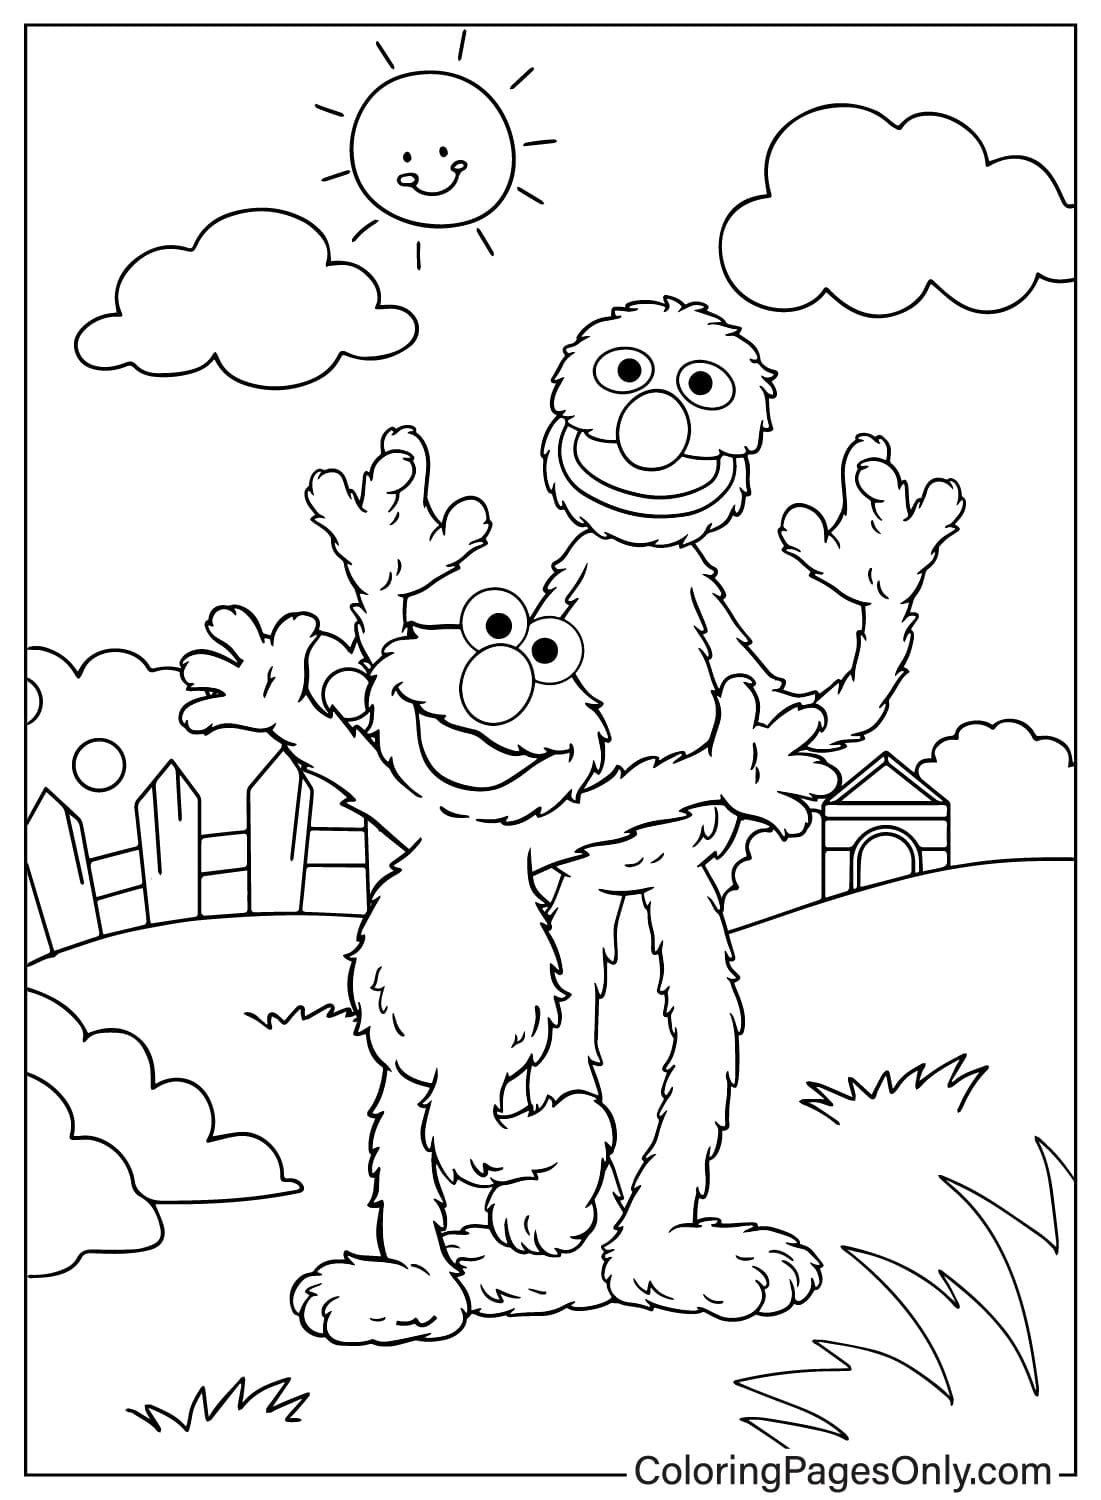 Página para colorir de Grover e Elmo de Grover